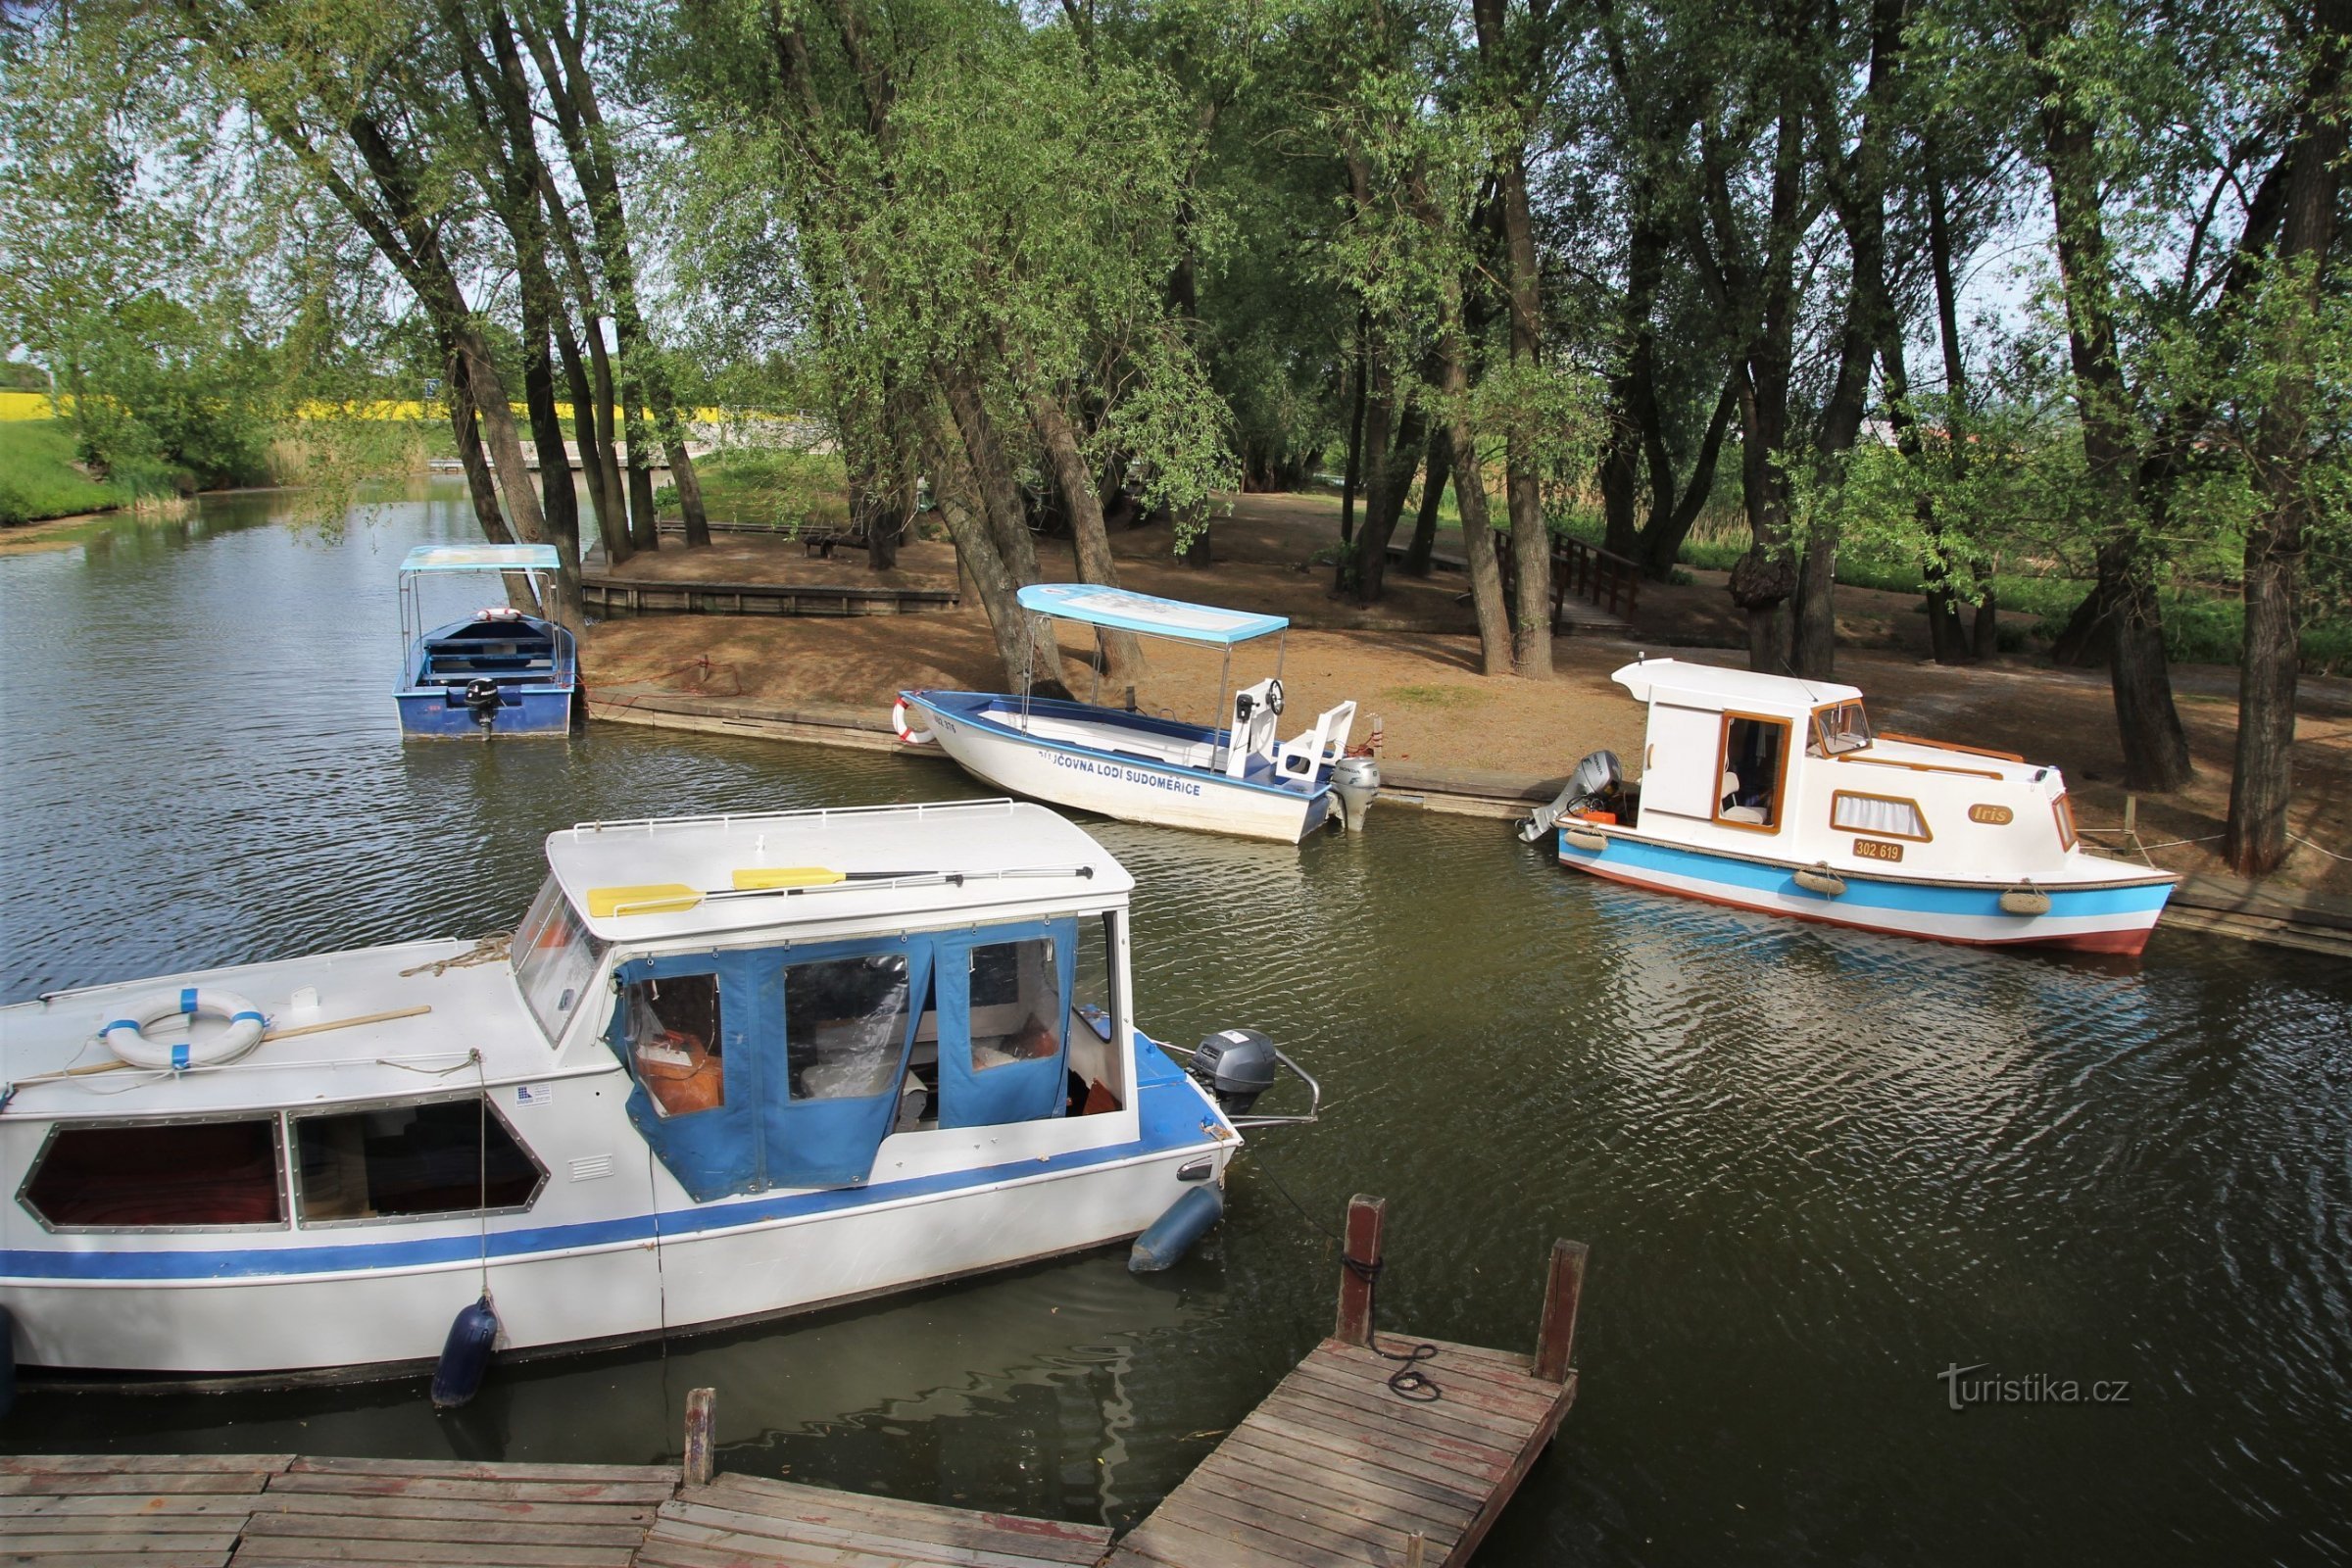 Răscruce turistică Baťův canal-Výklopník